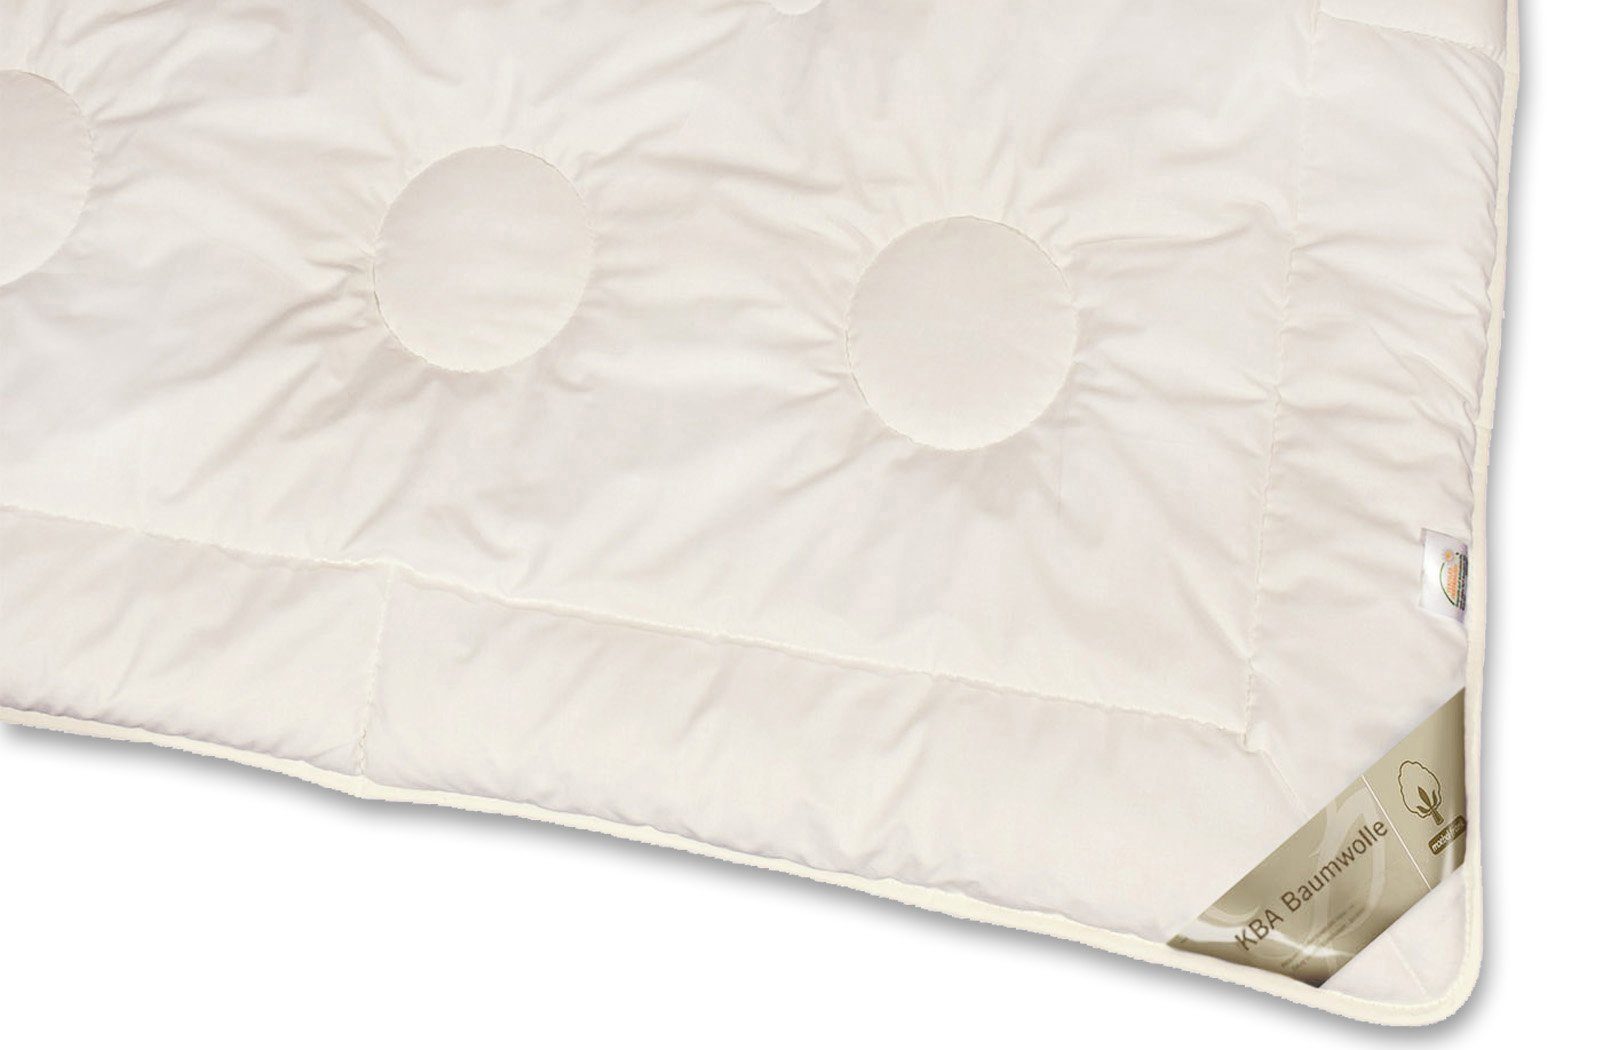 4-Jahreszeitenbett, Nancy, Nutzung franknatur, Füllung: 100% kbA, kbA, 100% Baumwolle ganzjährige Baumwolle für Bezug: Bettdecke